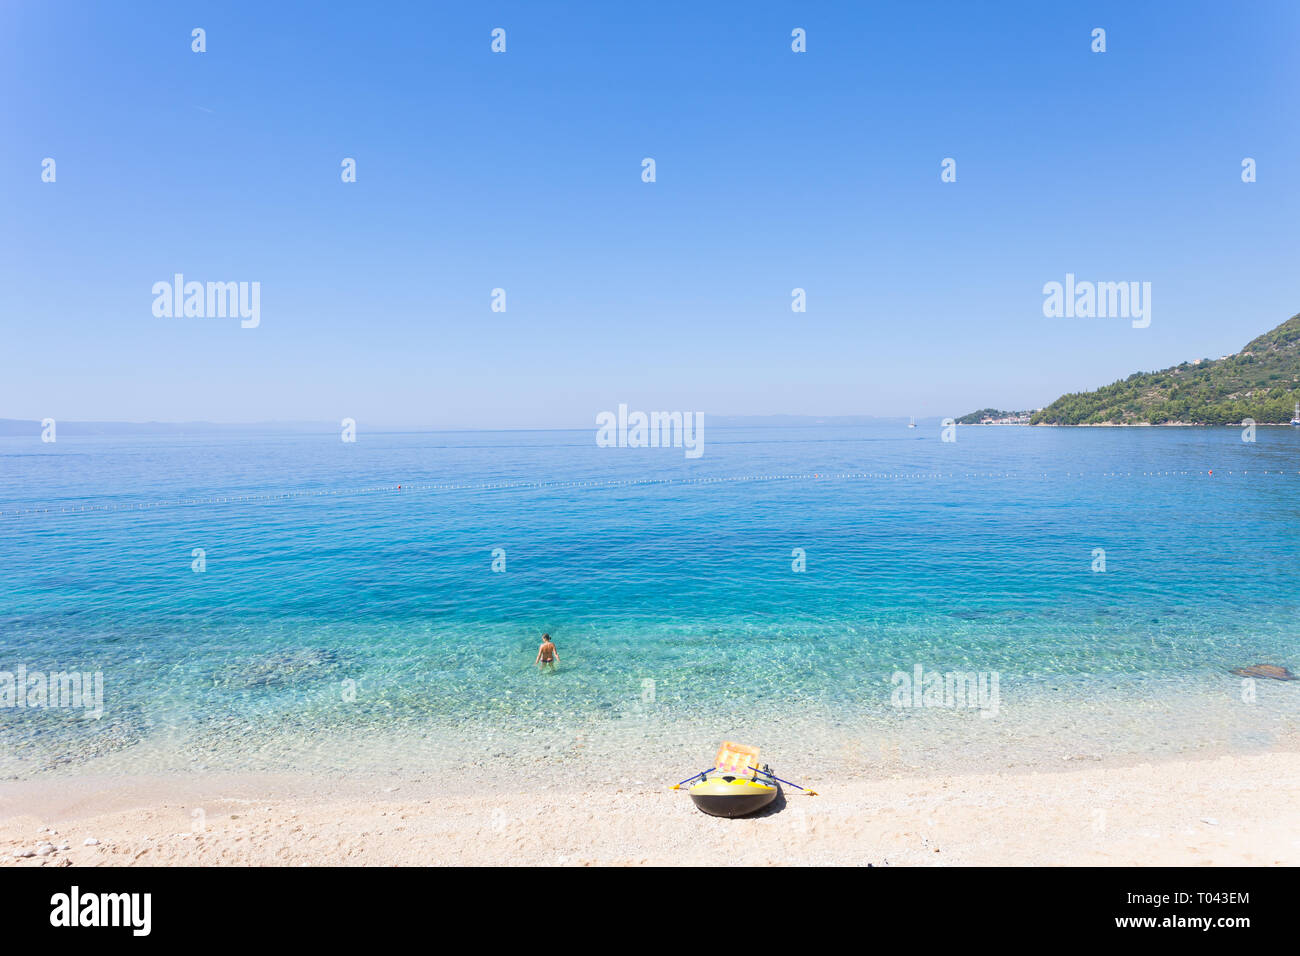 Drasnice e, Dalmazia, Croazia, Europa - barca a remi presso la bellissima spiaggia di Drasnice e Foto Stock